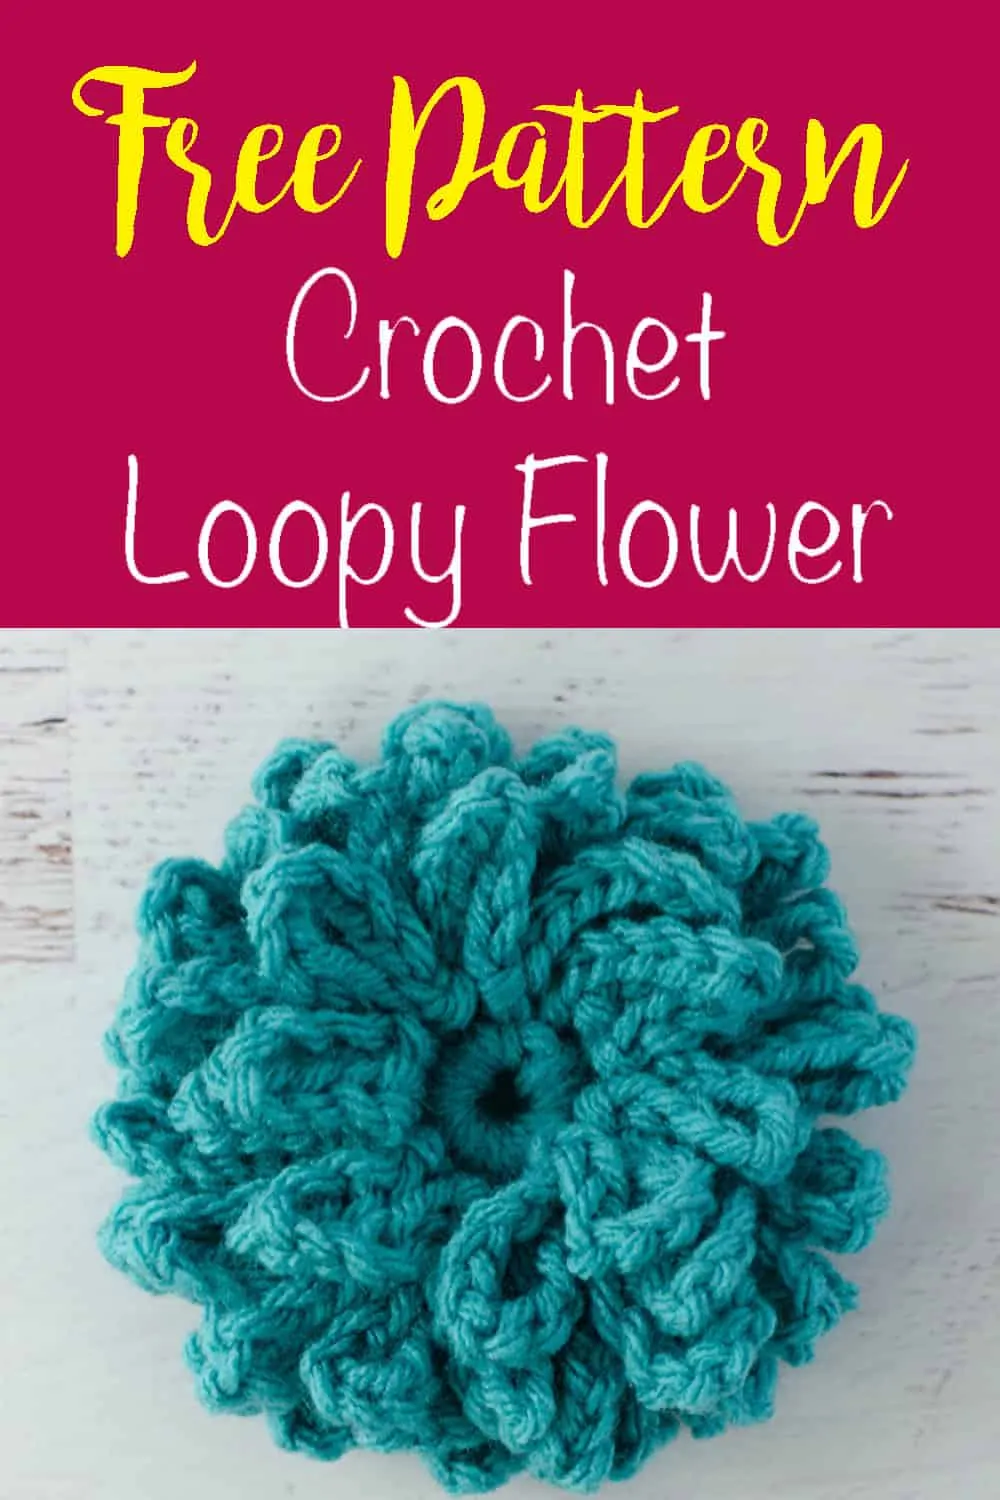 Crochet loopy flower